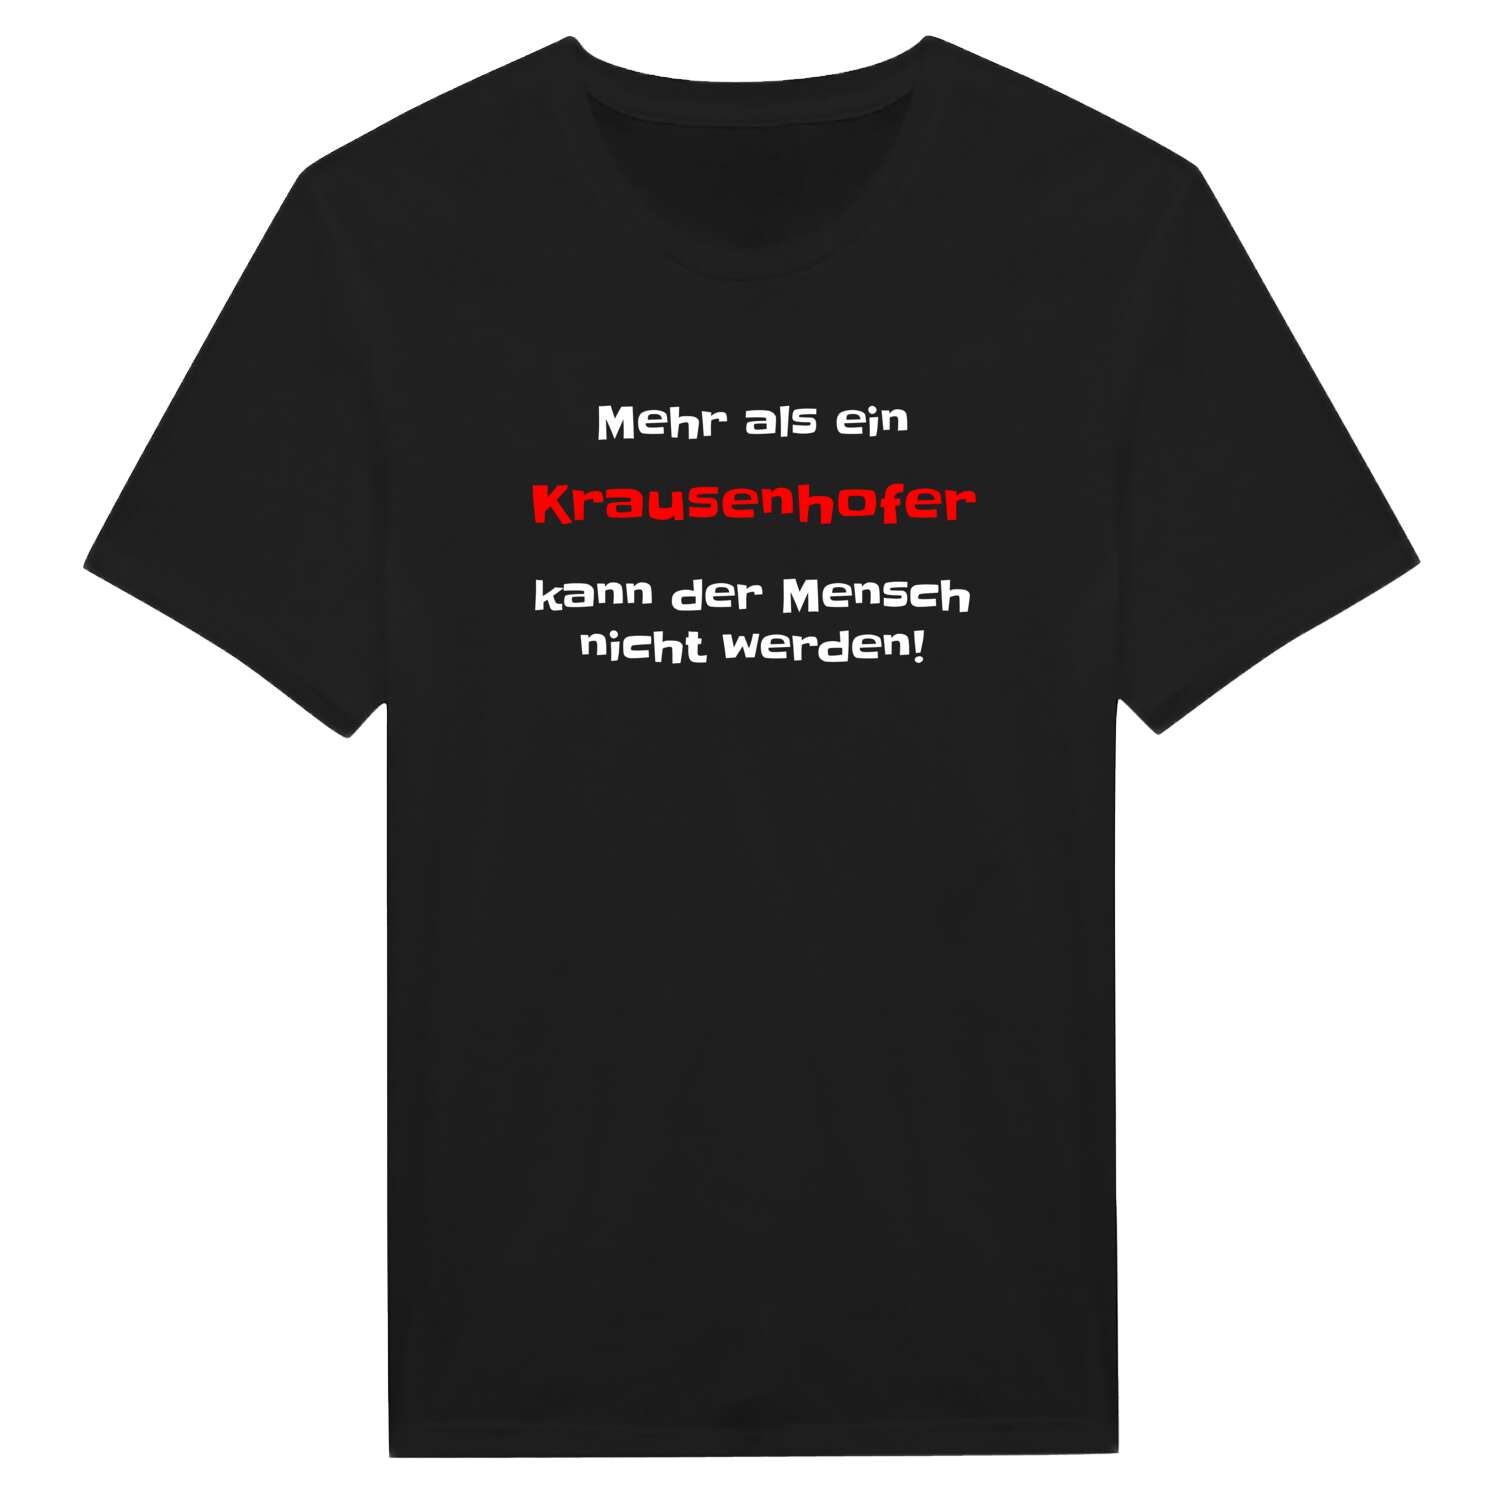 Krausenhof T-Shirt »Mehr als ein«